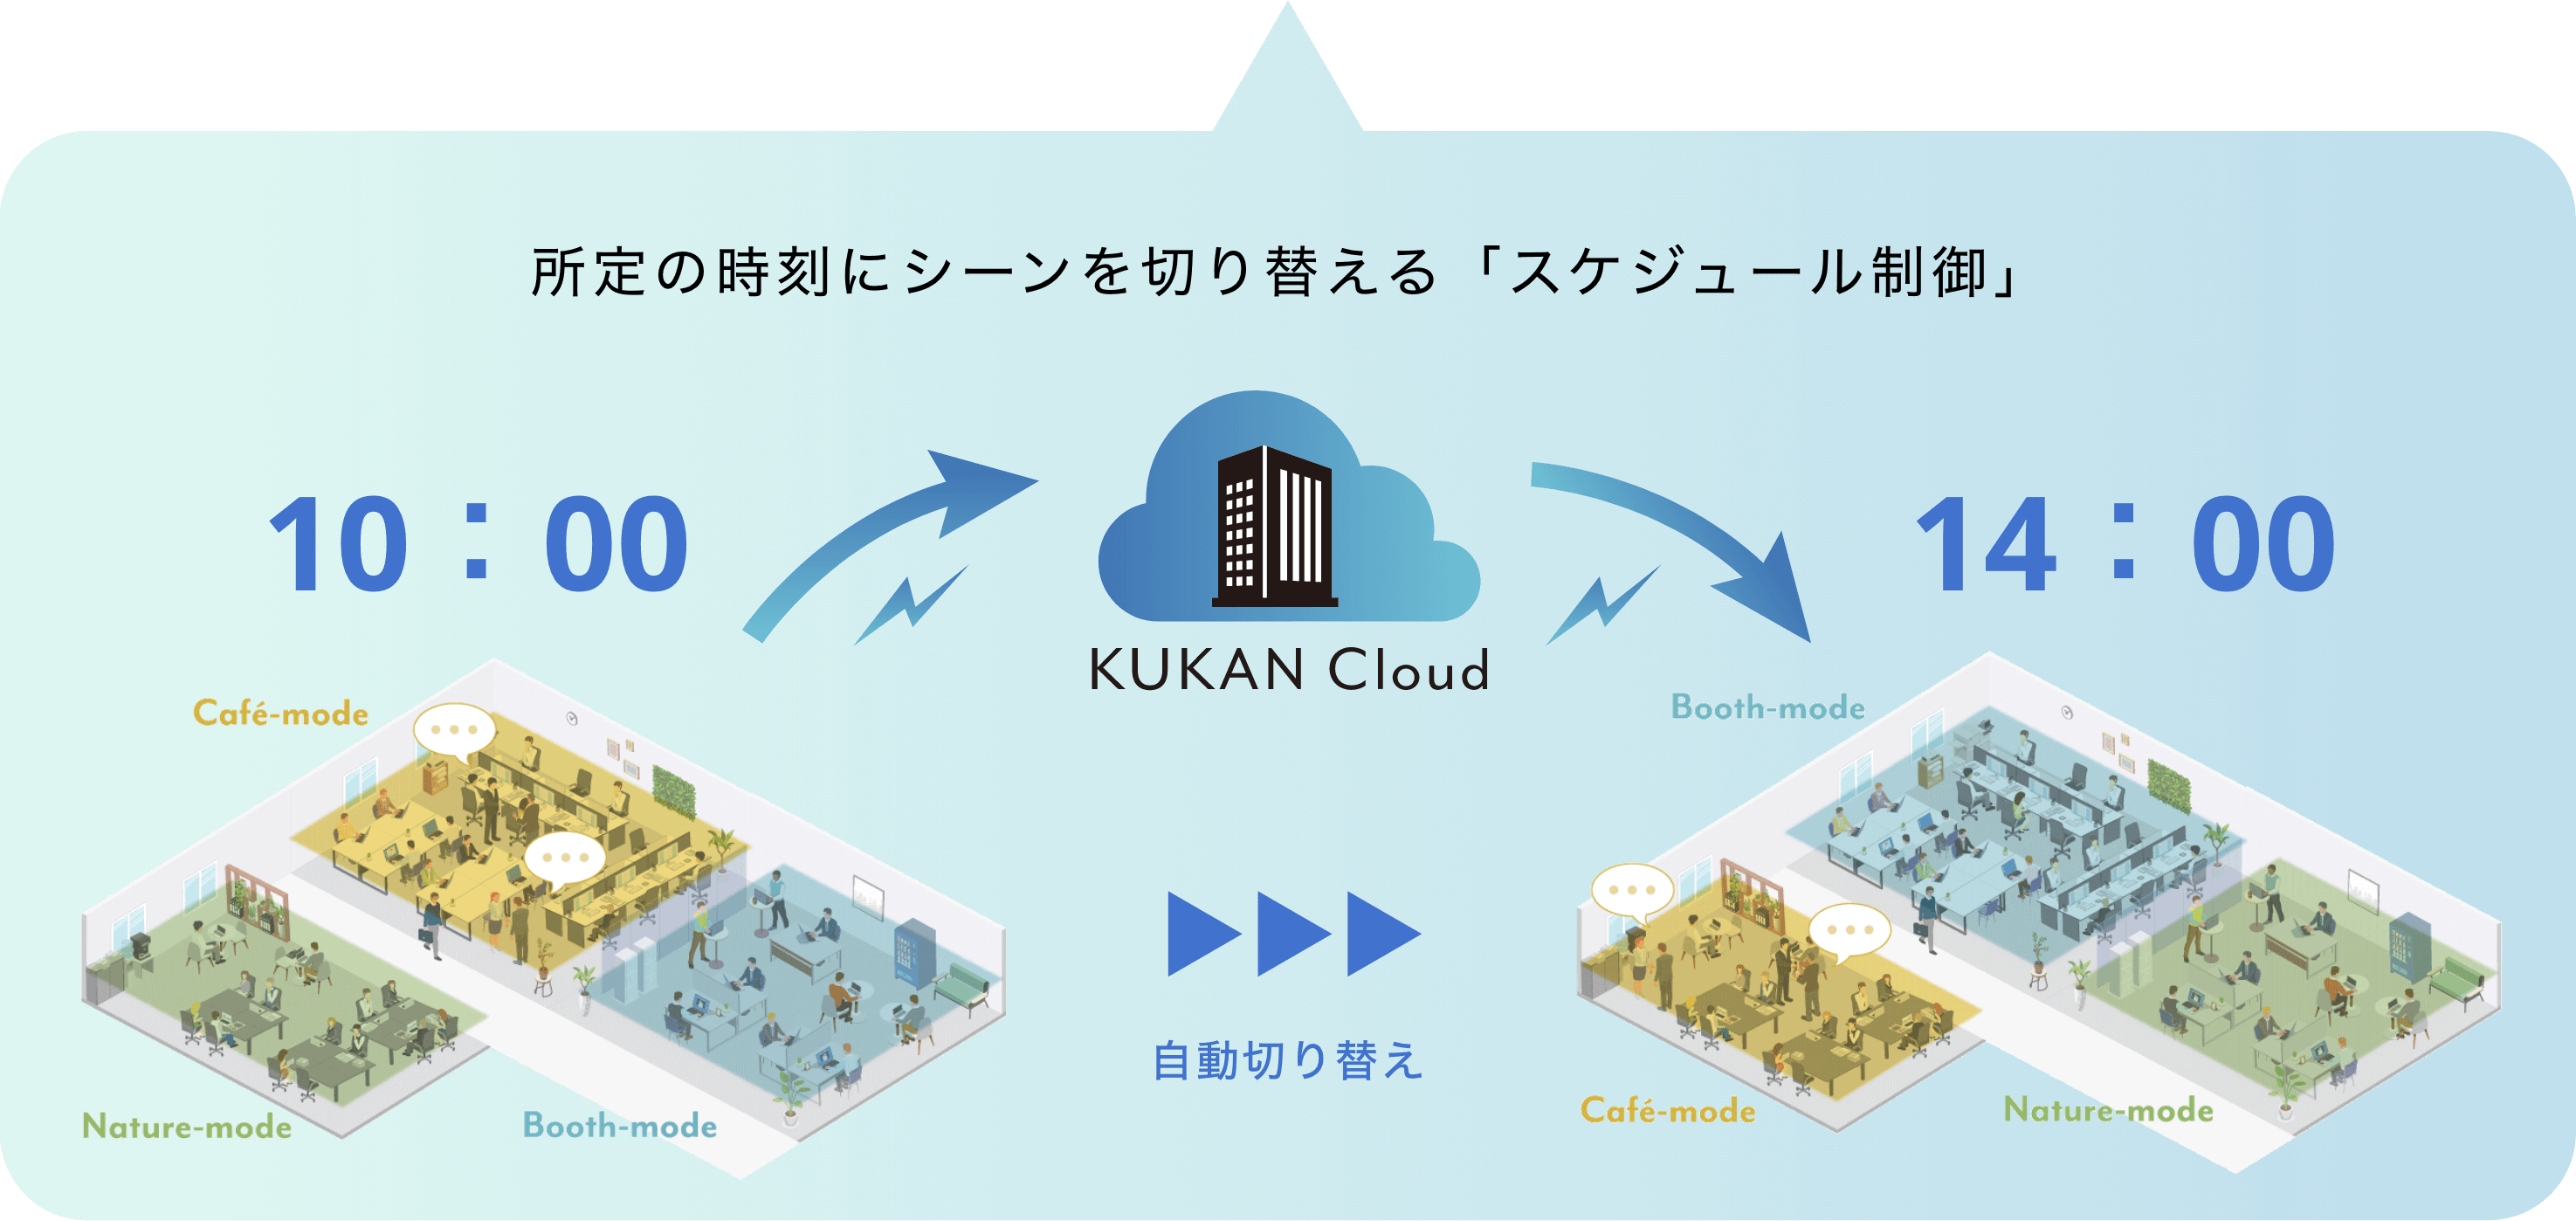 所定の時刻にシーンを切り替える「スケジュール制御」​ 10:00→KUKAN Cloud 14:00 自動切り替え